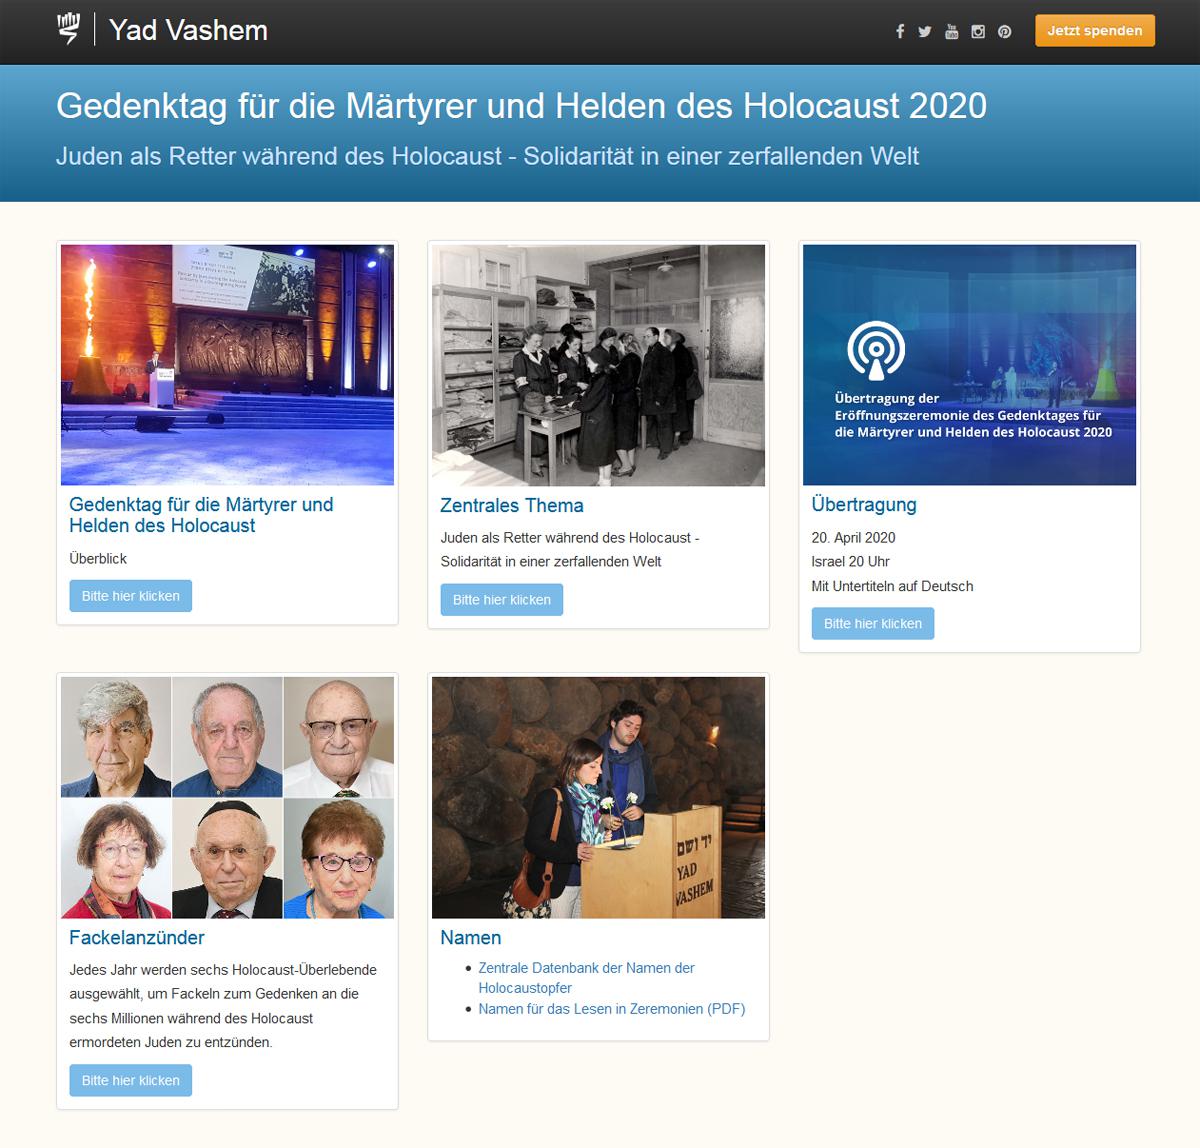 Die Yad Vashem-Seite zum Gedenktag für die Märtyrer und Helden des Holocaust